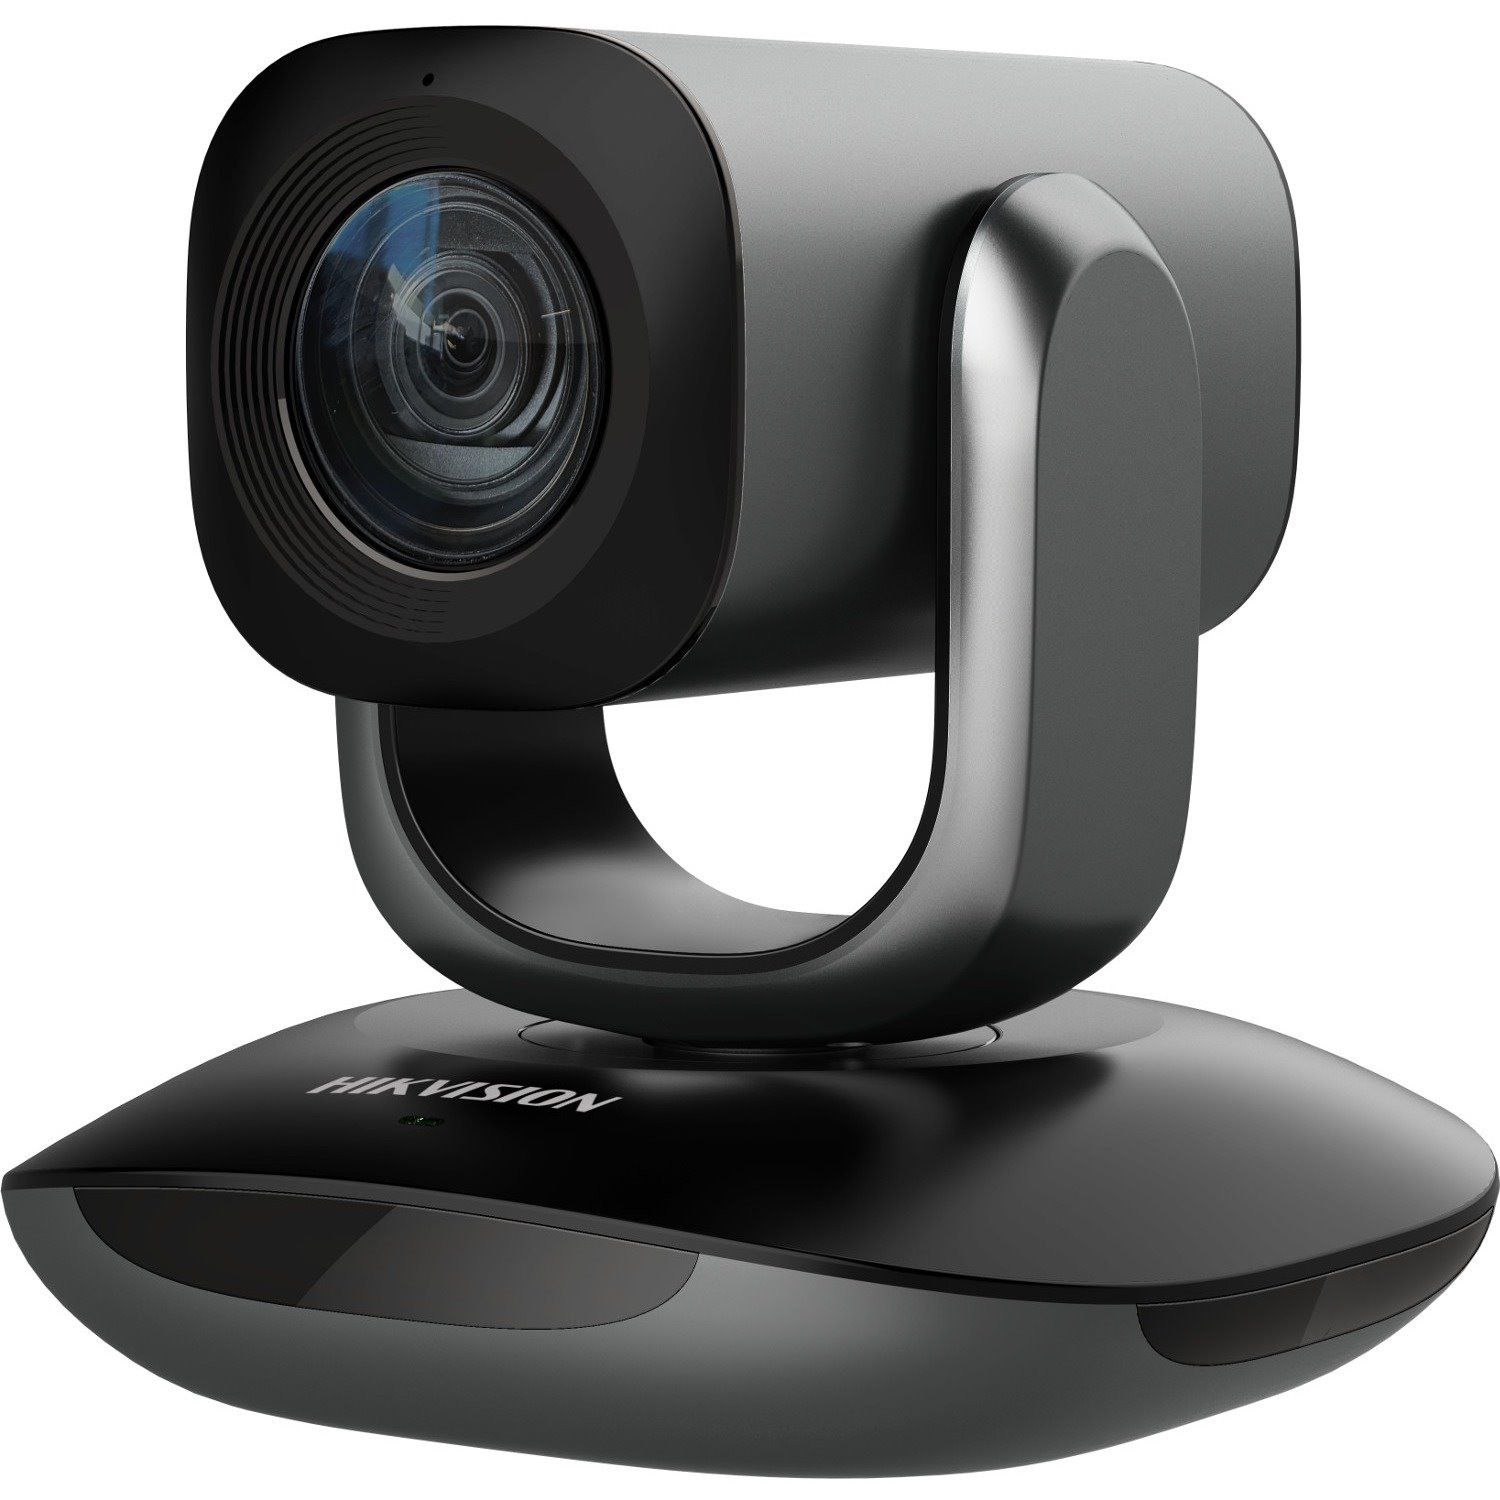 Hikvision DS-U102 Video Conferencing Camera - 2 Megapixel - 30 fps - USB 2.0 - 1 Pack(s)